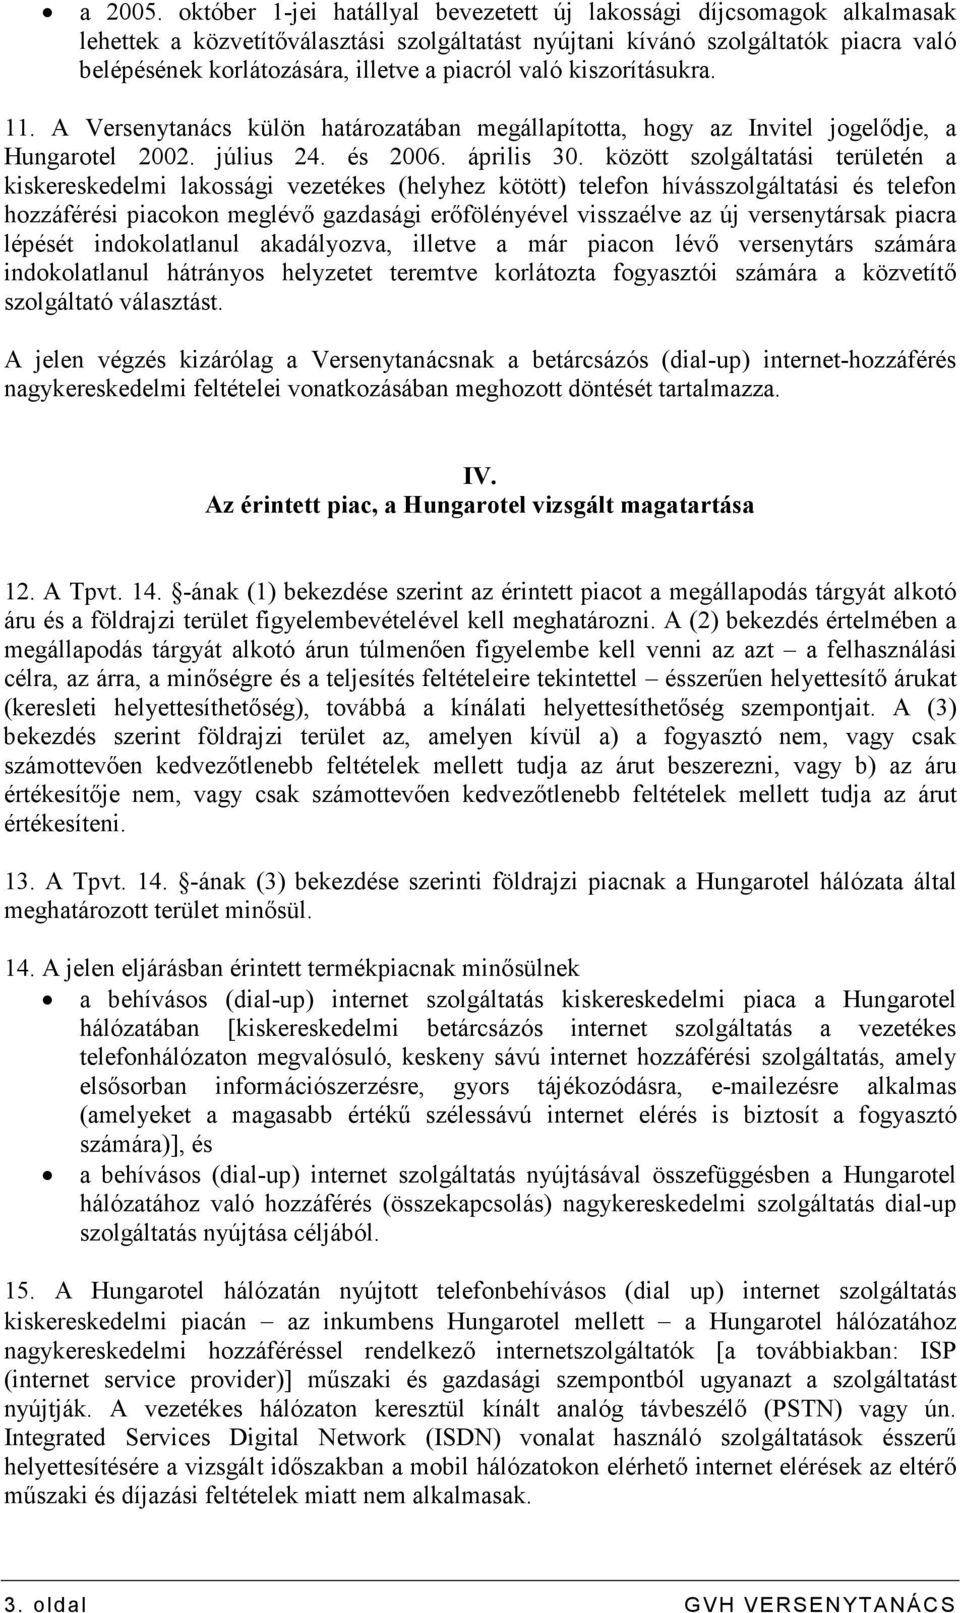 piacról való kiszorításukra. 11. A Versenytanács külön határozatában megállapította, hogy az Invitel jogelıdje, a Hungarotel 2002. július 24. és 2006. április 30.